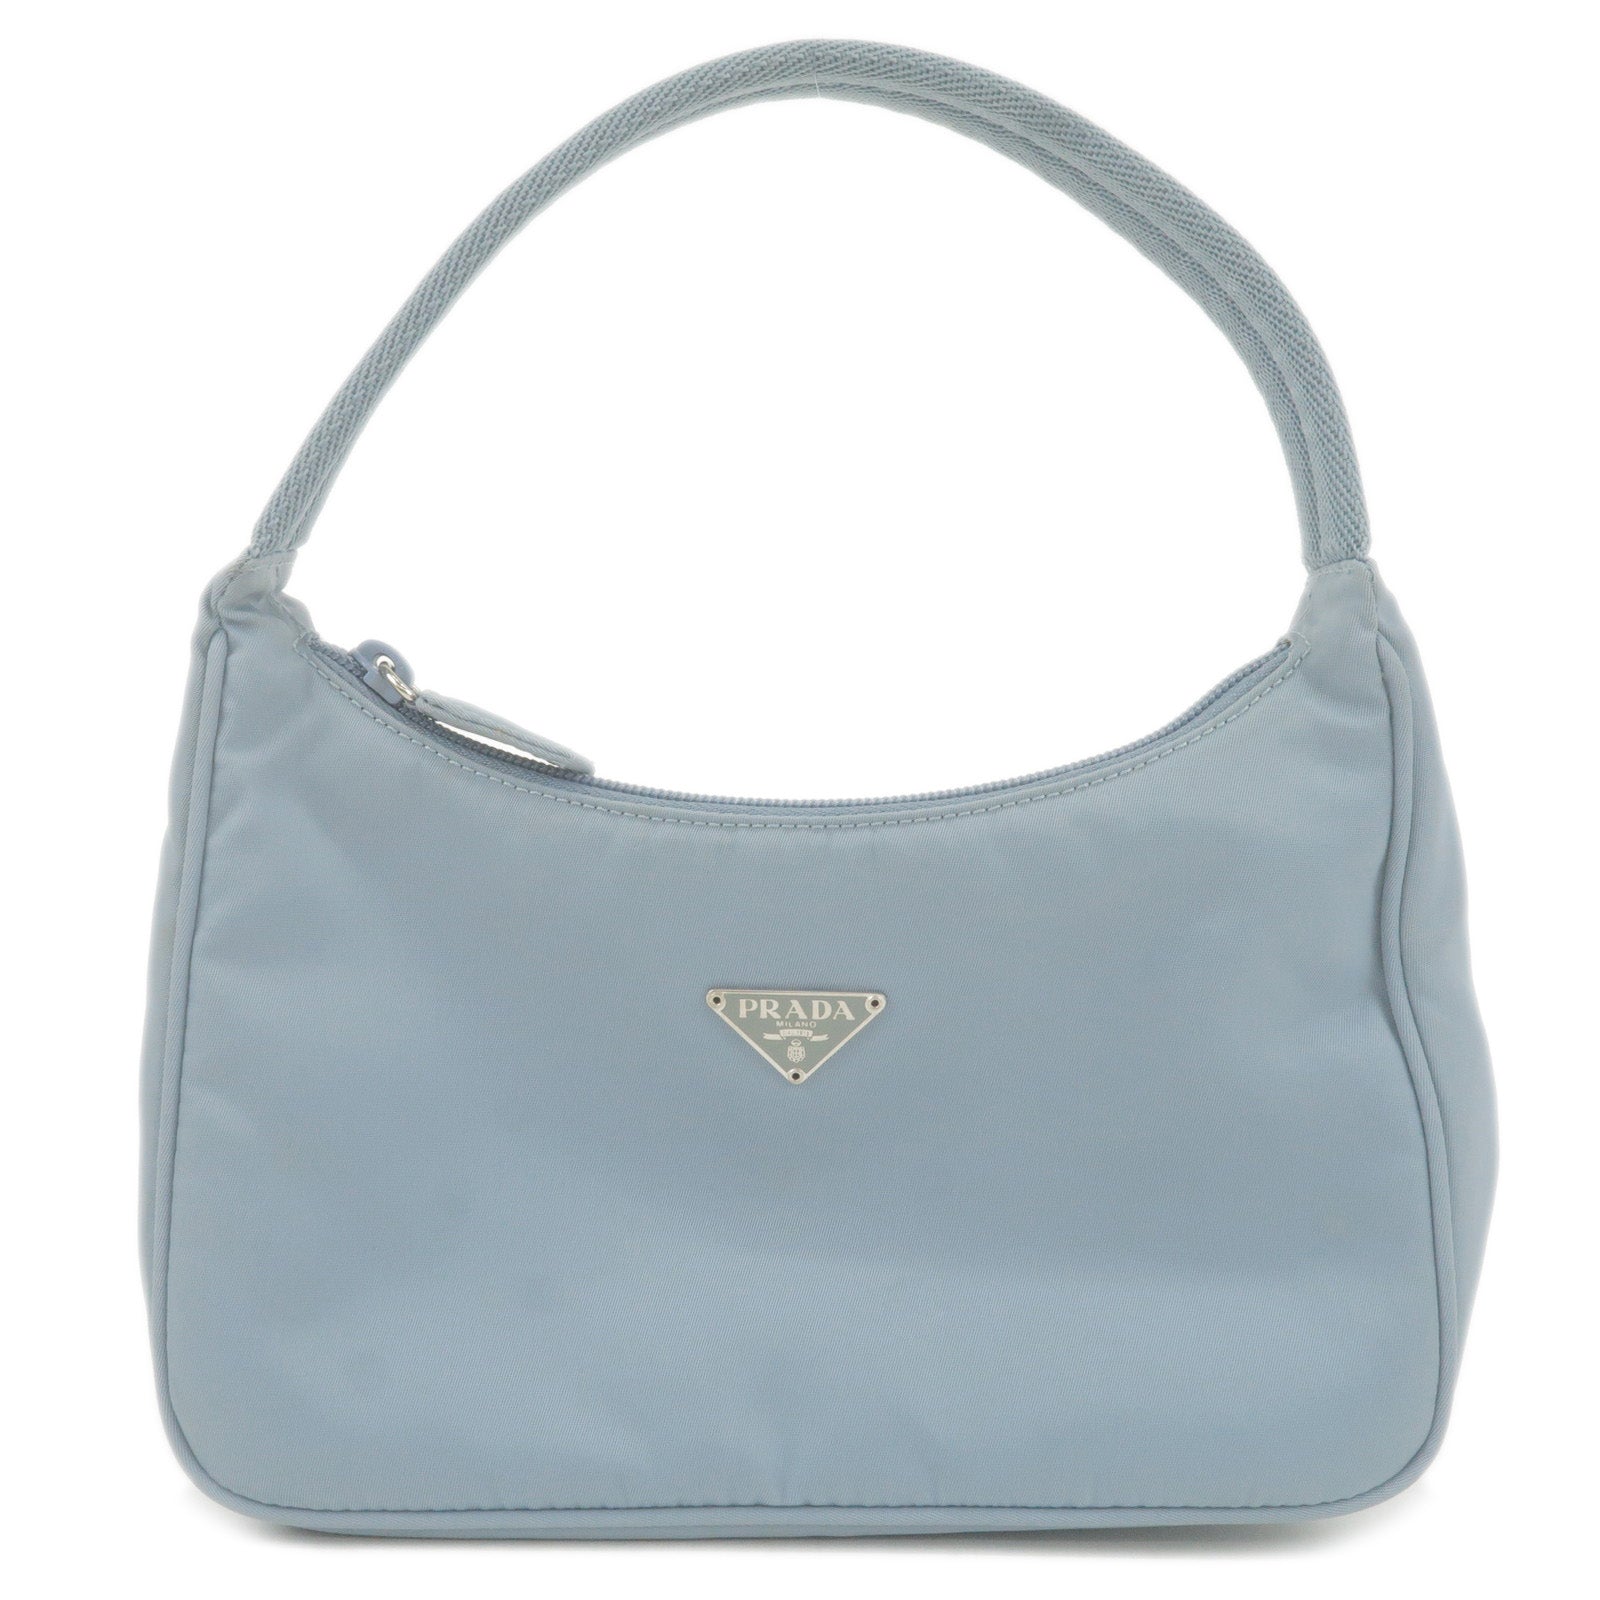 Prada Blue Saffiano Leather 2 Way Bag Crossbody handbag | eBay